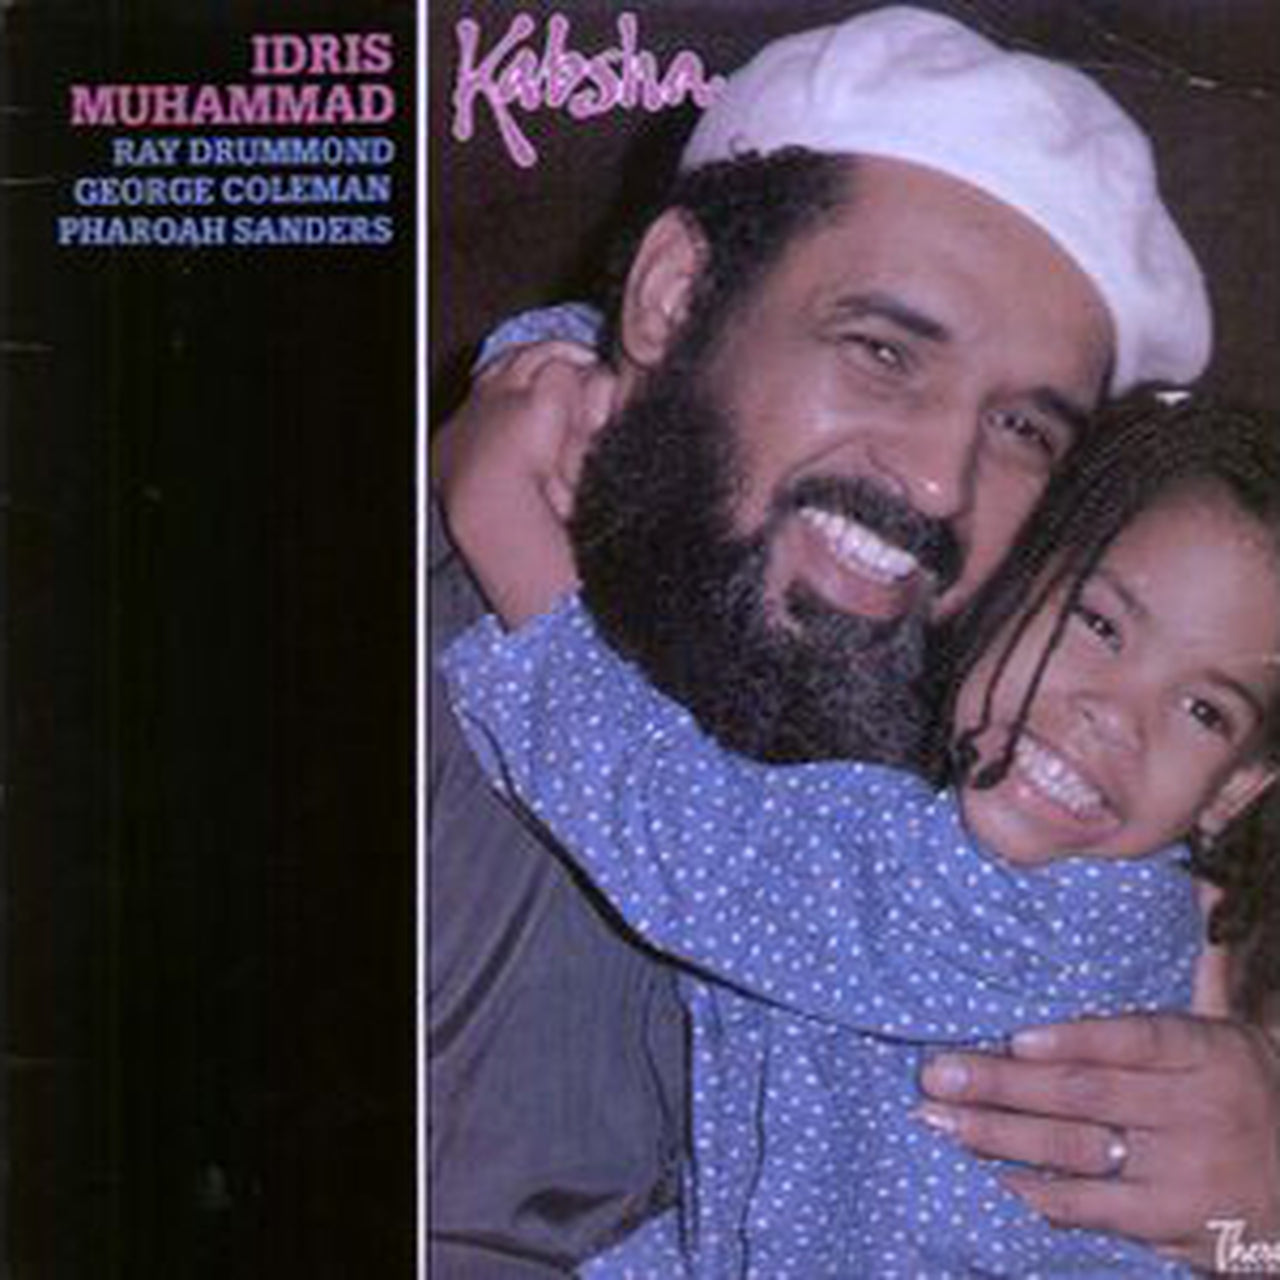 Idris Muhammad - Kabsha - Pure Pleasure LP